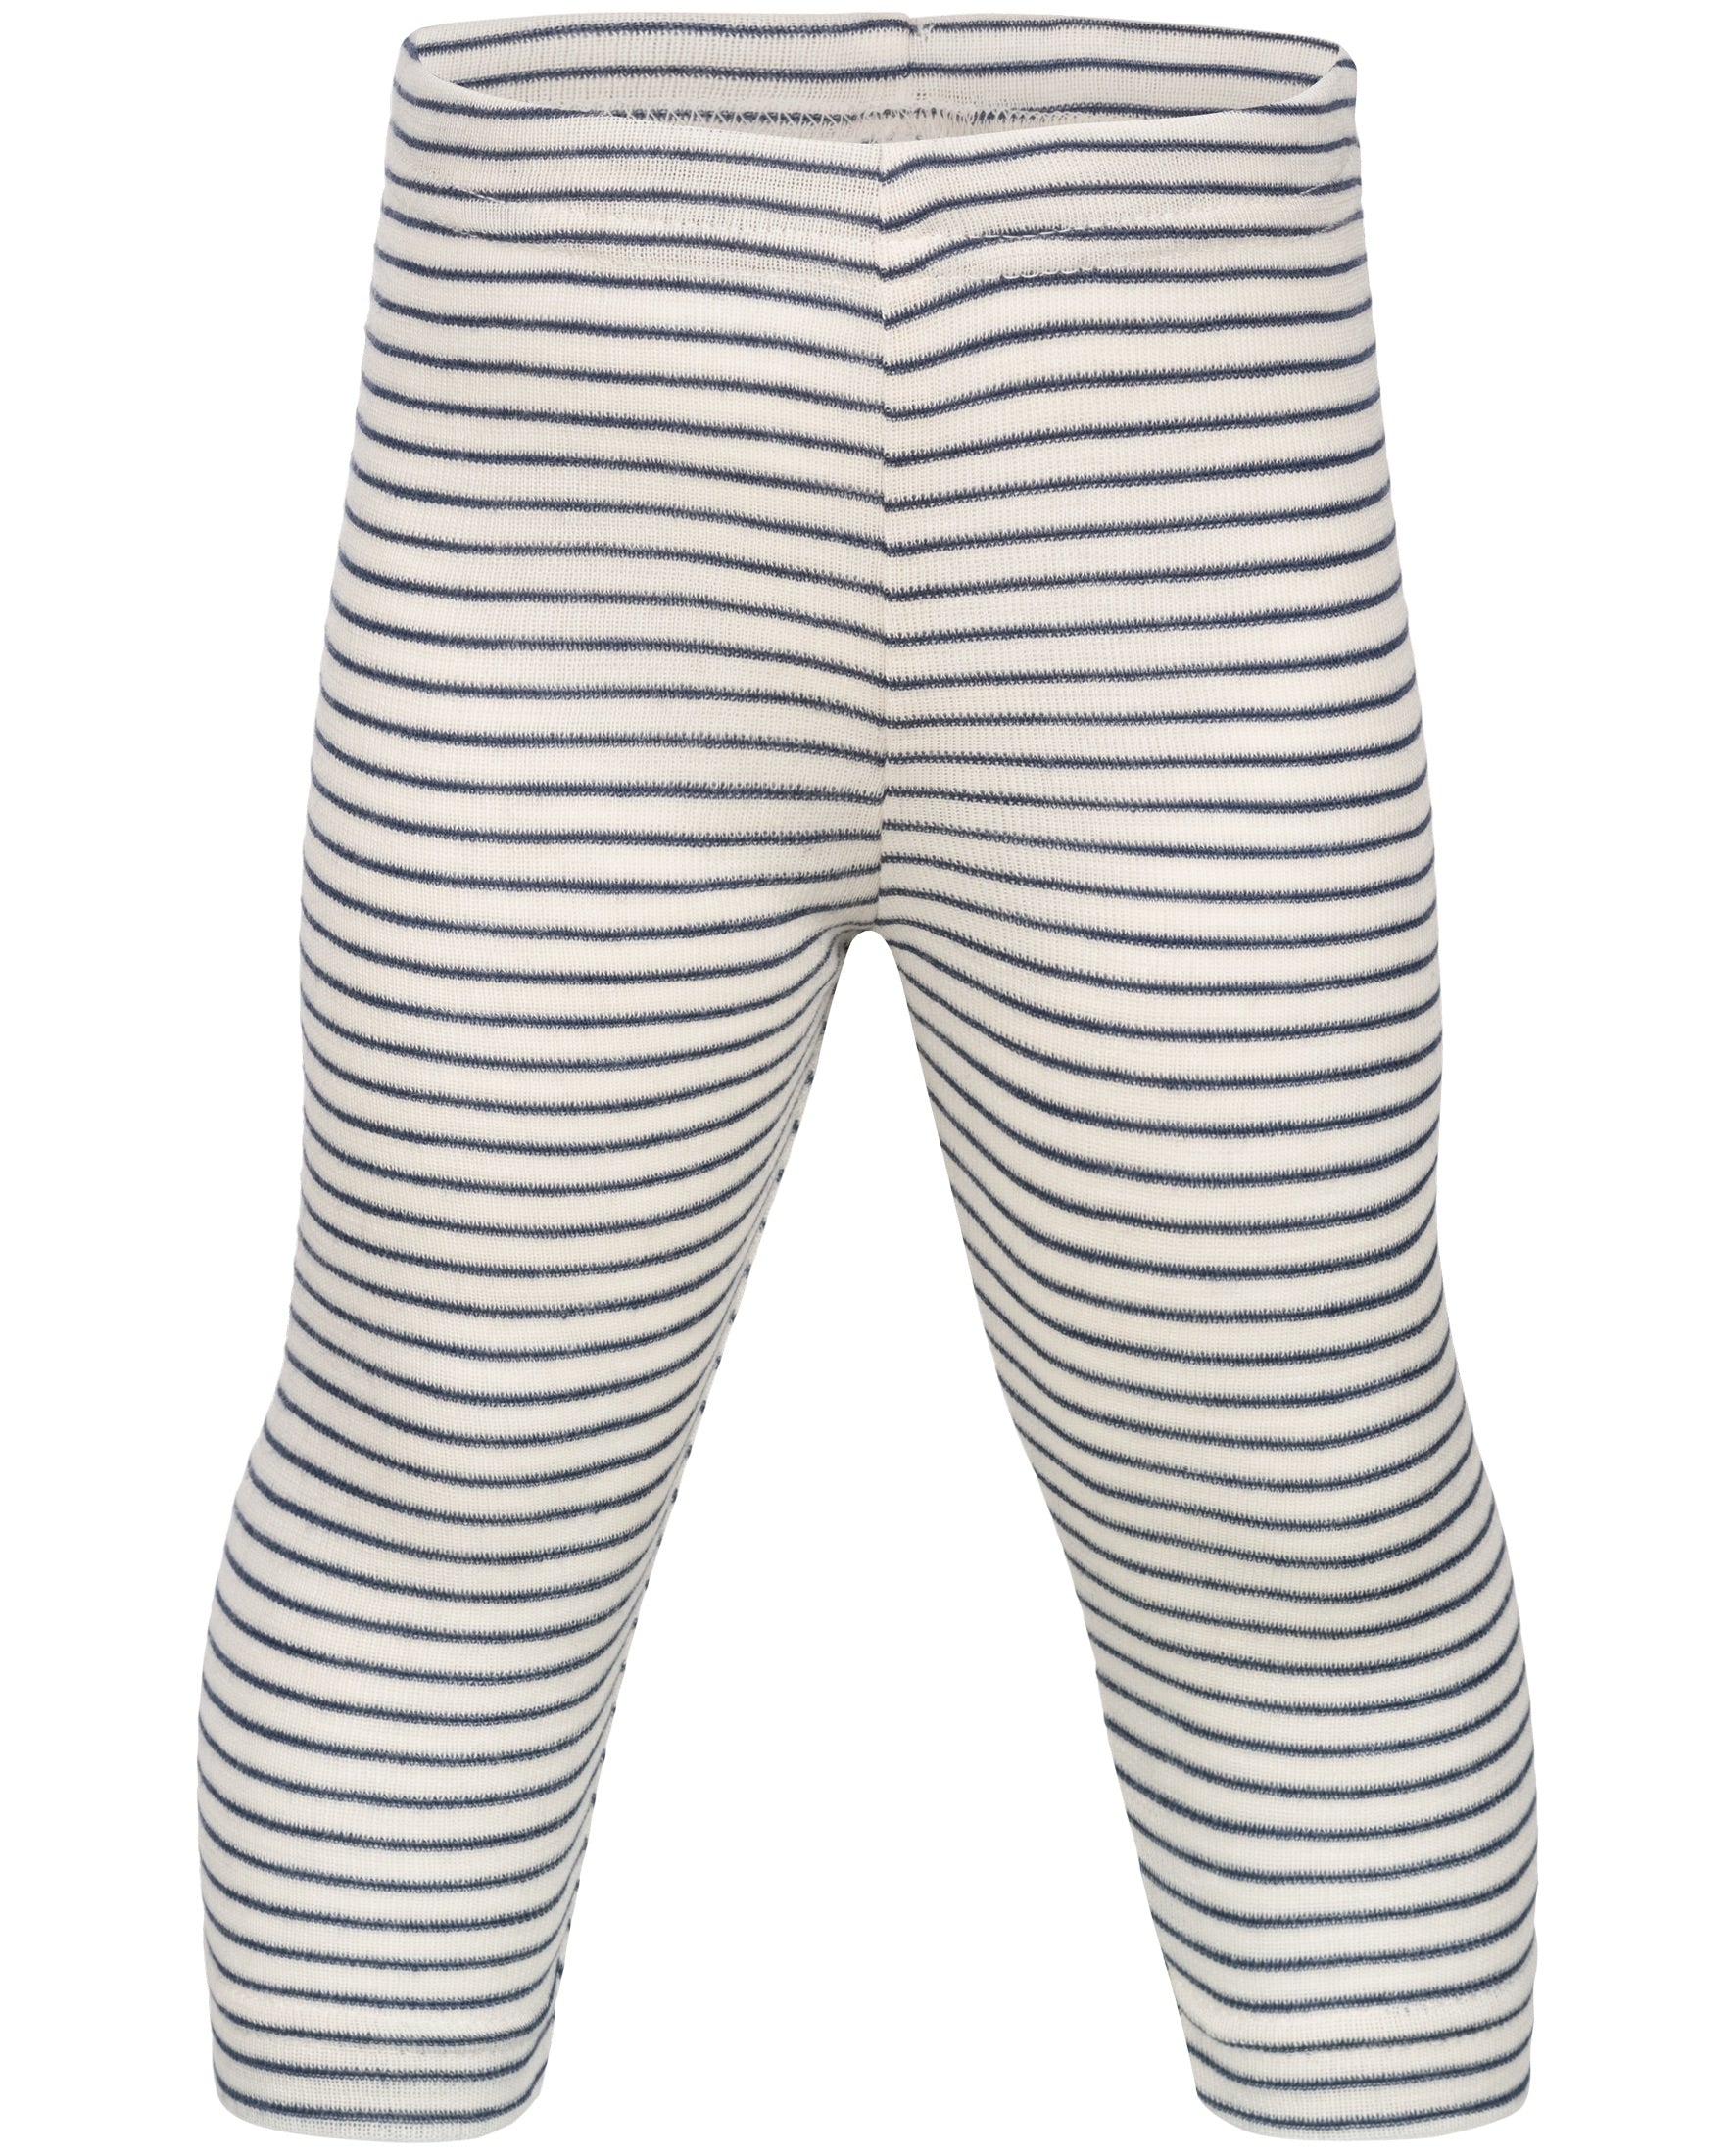 Engel silk wool blend baby leggings in navy natural stripe